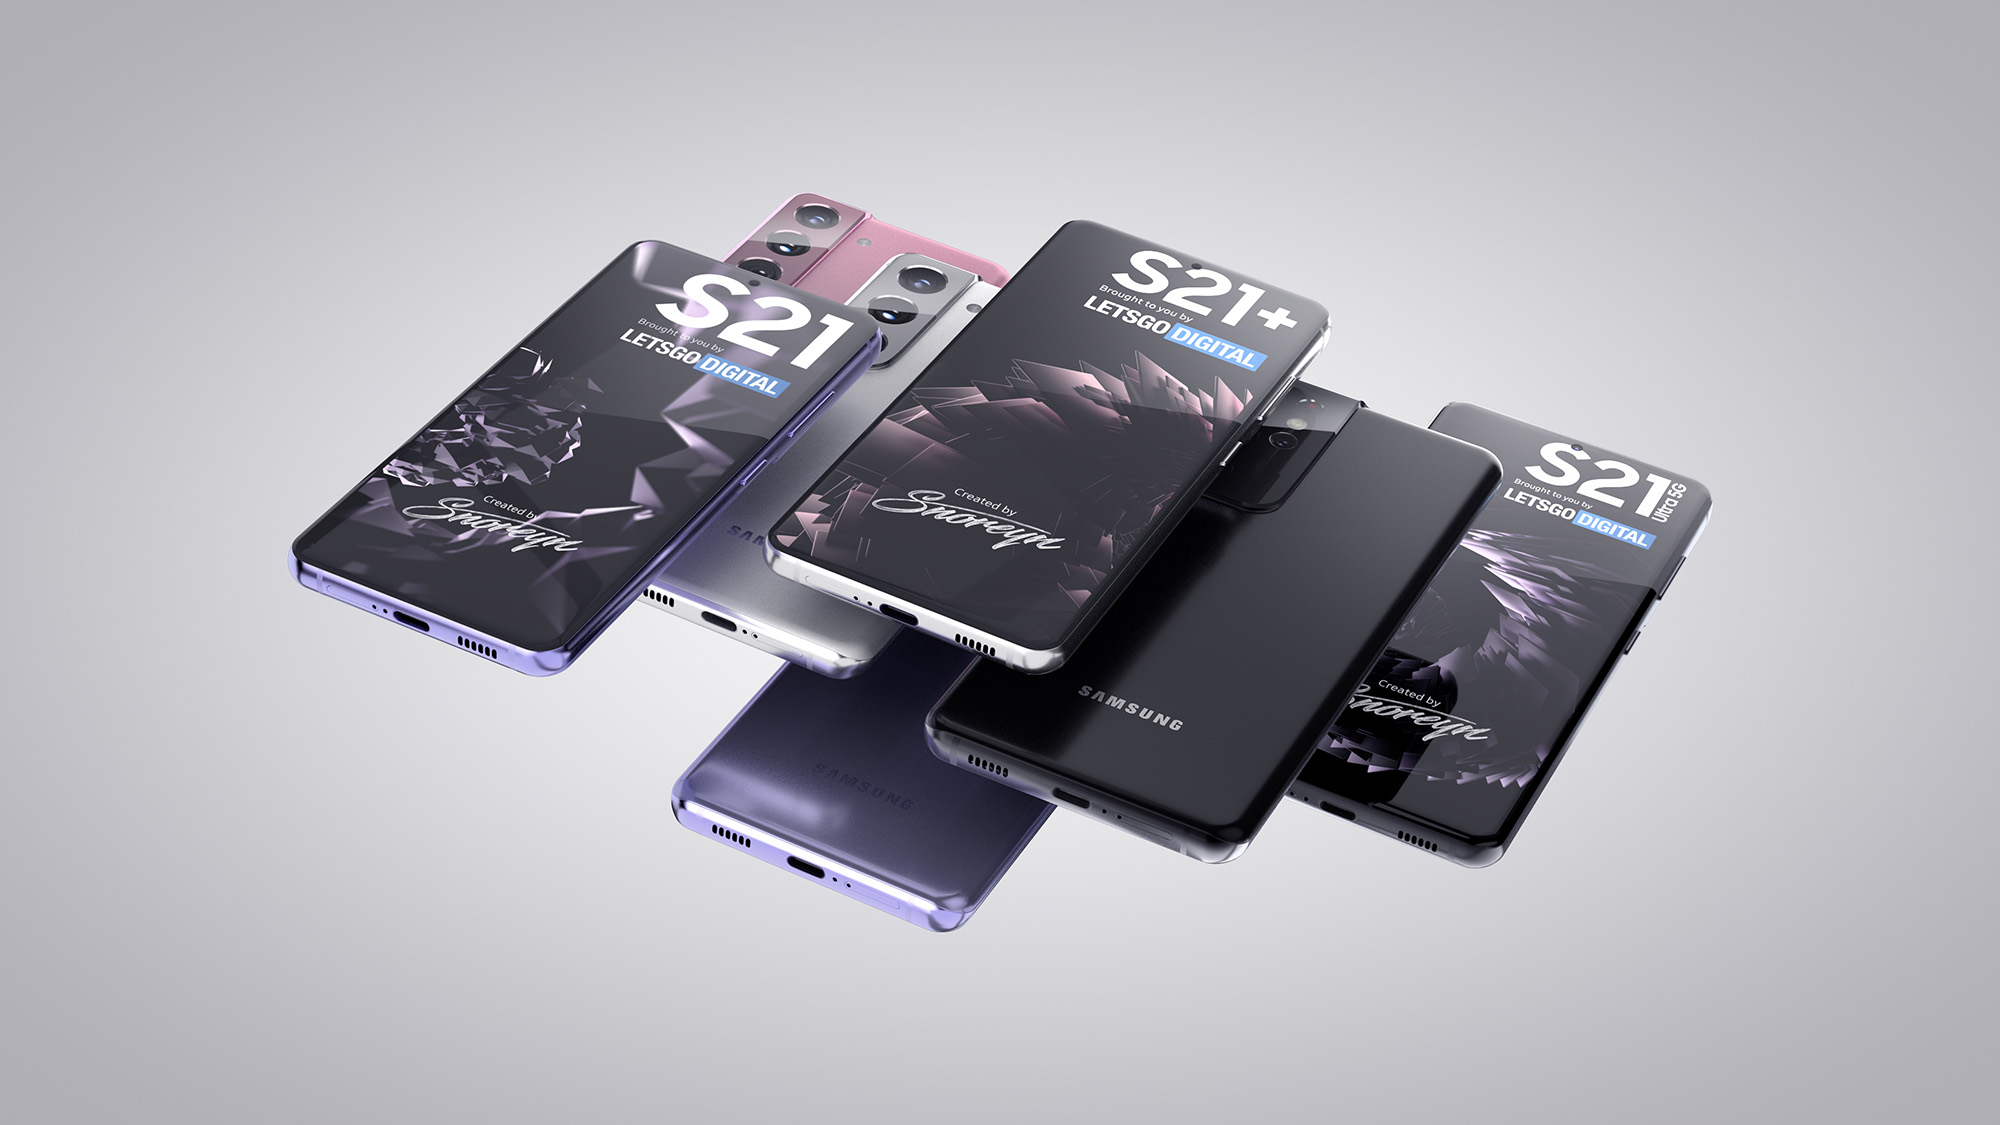 Появились первые качественные изображения новых смартфонов Samsung Galaxy S21, Galaxy S21+ и Galaxy S21 Ultra